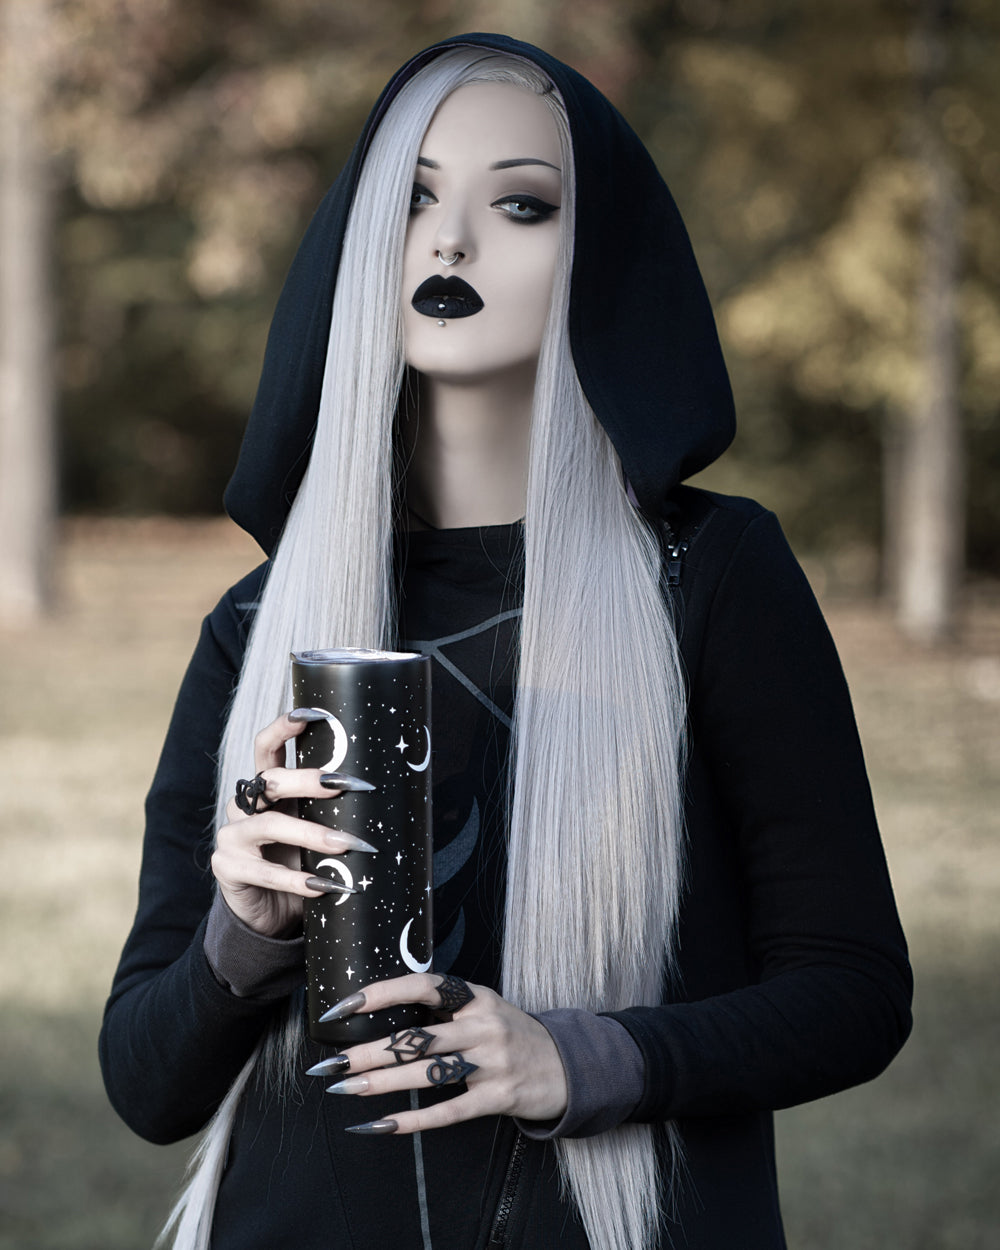 Goth girl 30 oz tumbler with water bottle top – LindaMayra